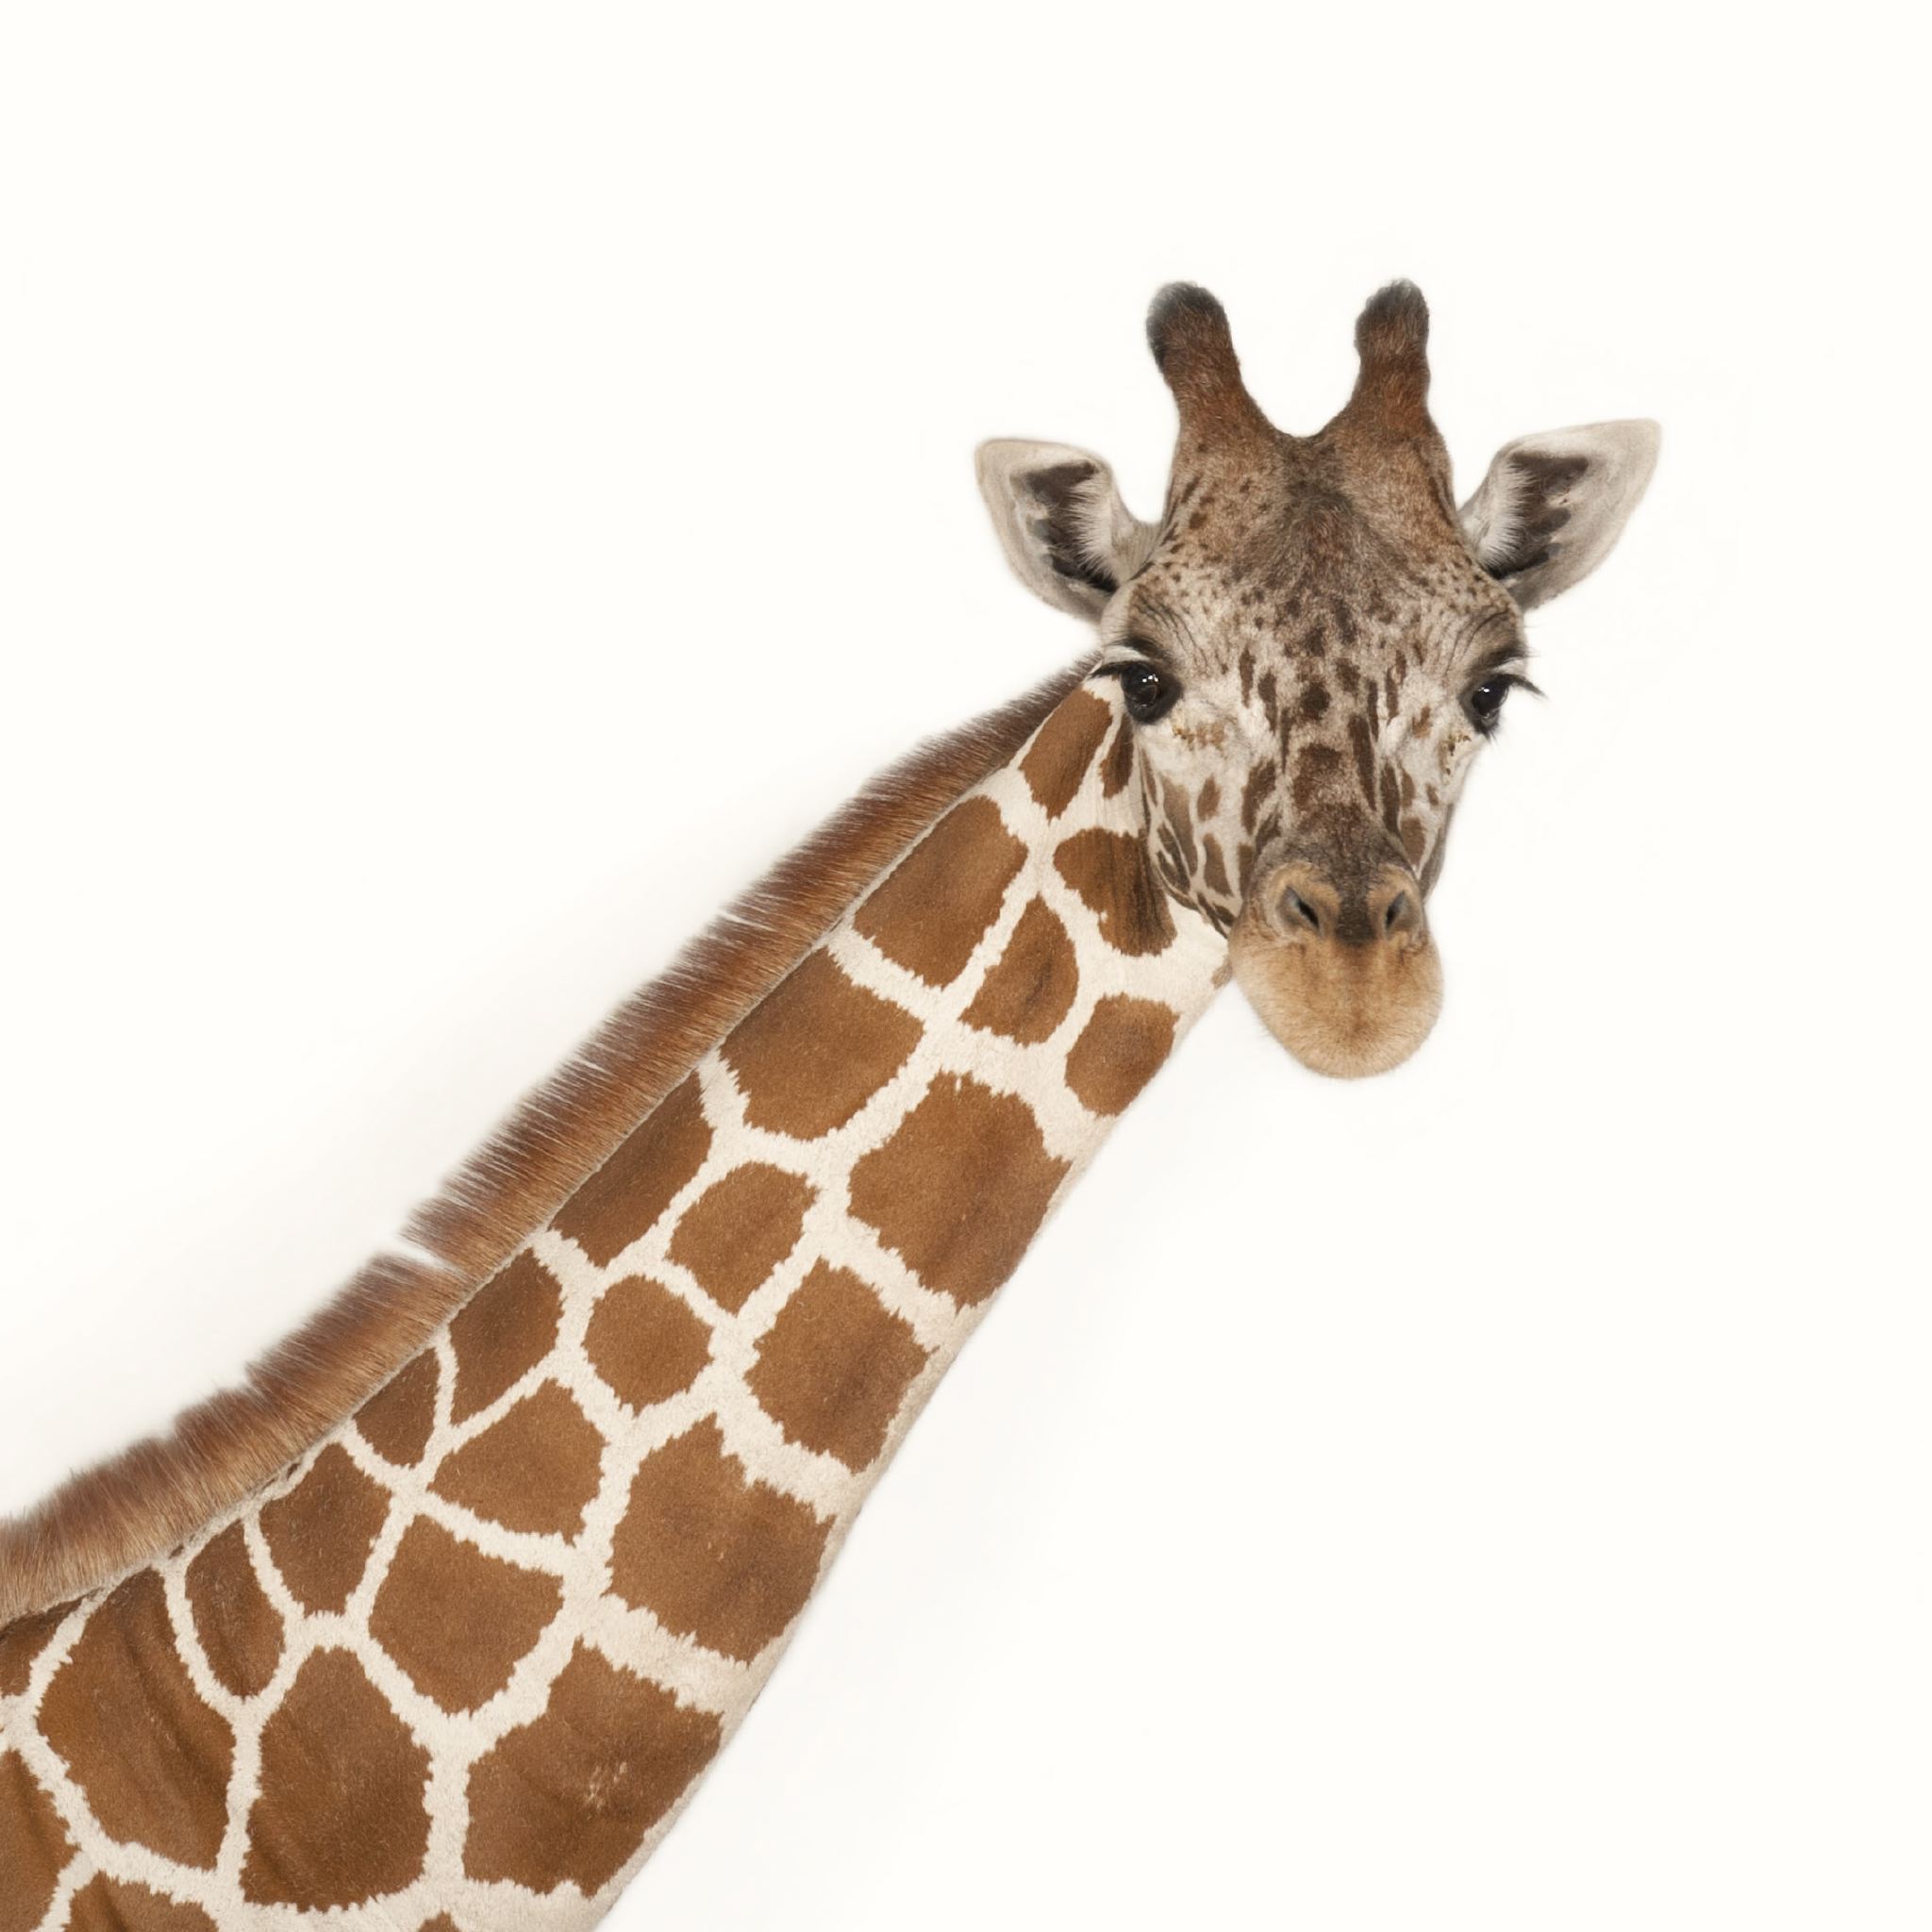 Giraffe | National Geographic